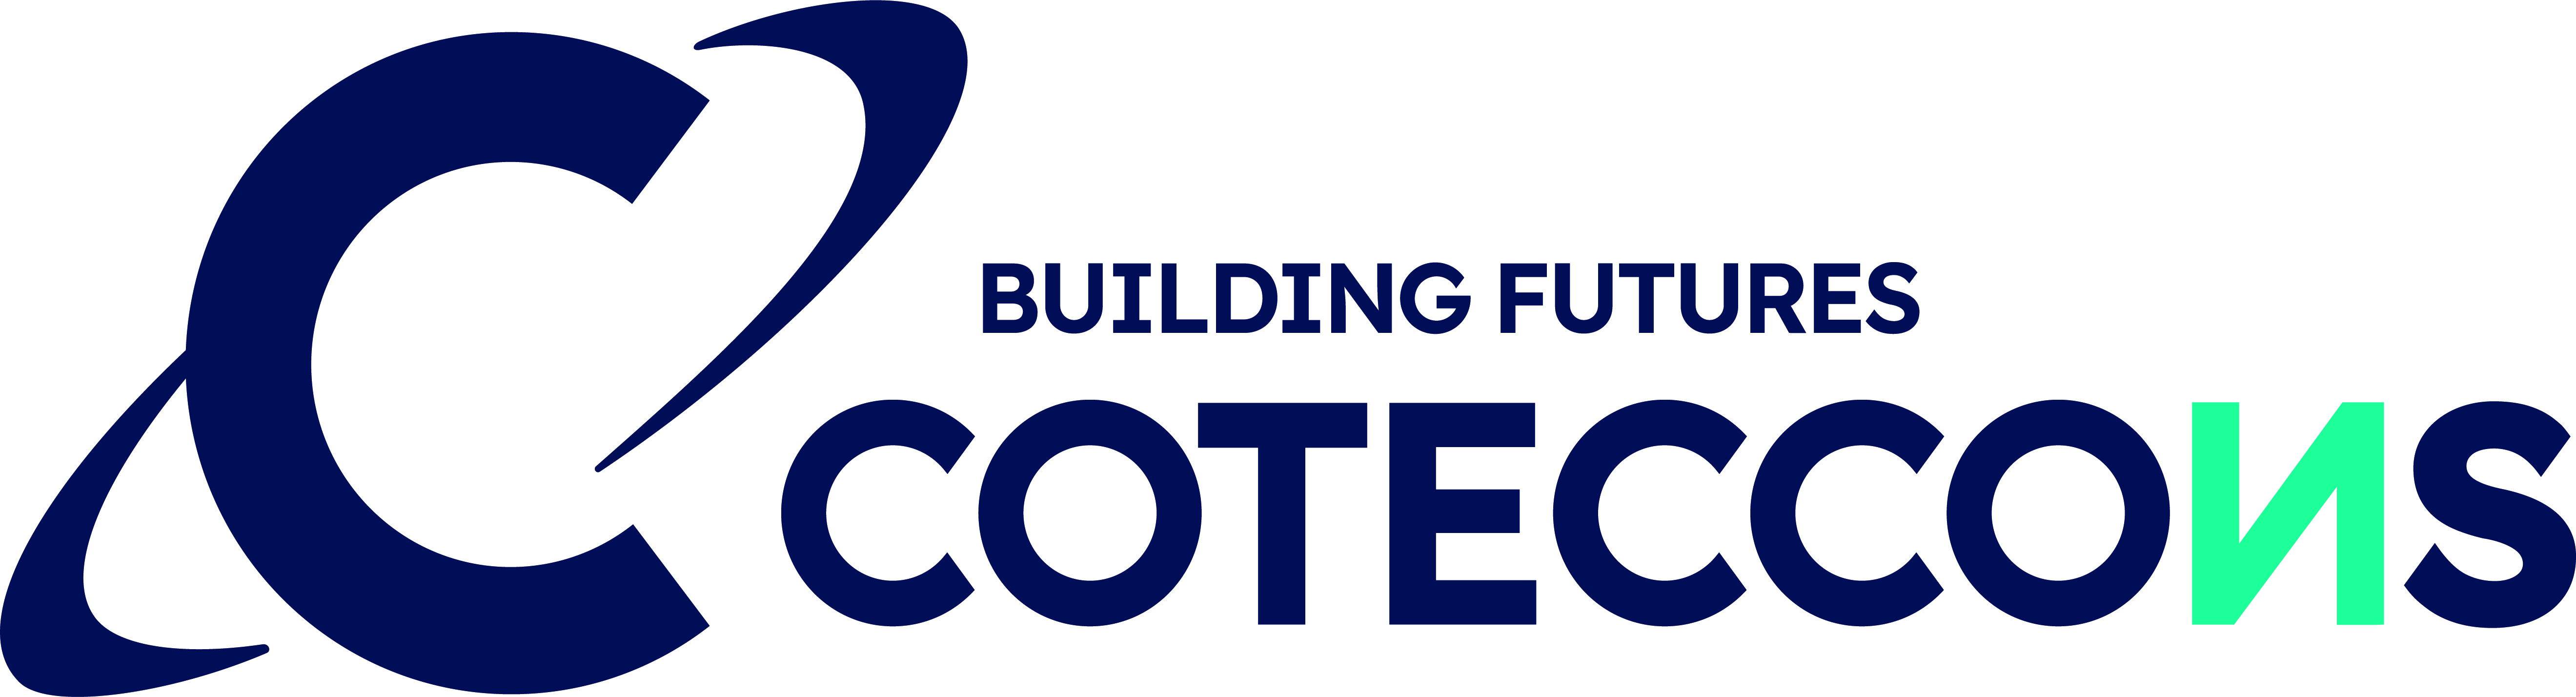 CTCP Xây dựng Coteccons - CTD